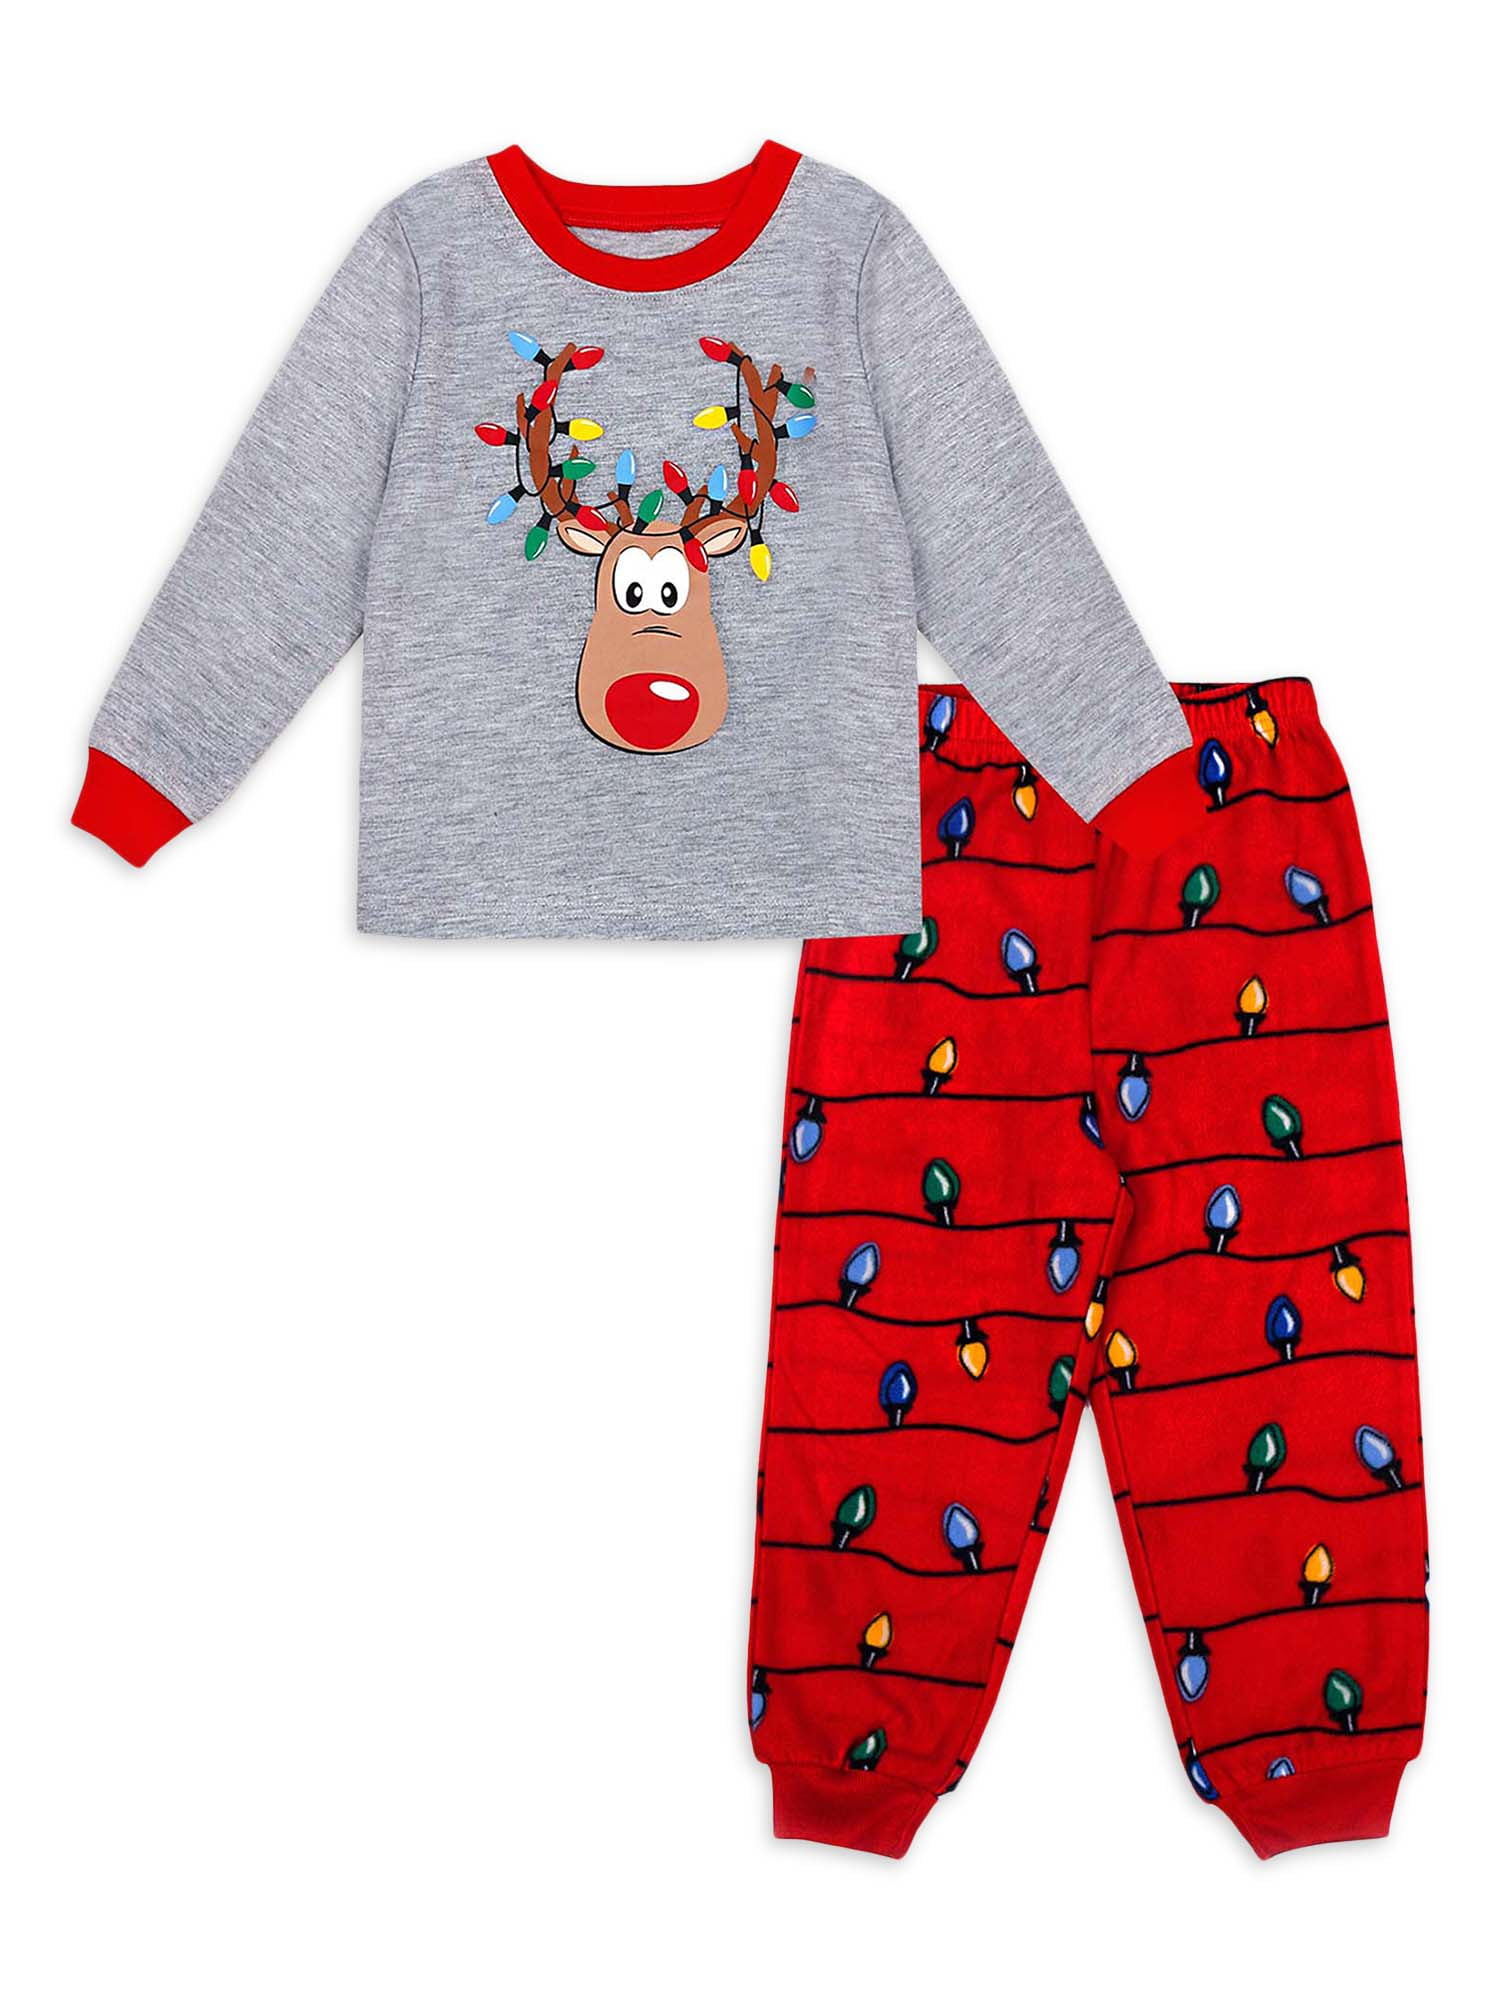 Raptop Christmas Pajamas Set Sleepwear Nightwear Family Matching Xmas Women Men Kids Baby Boy Girl